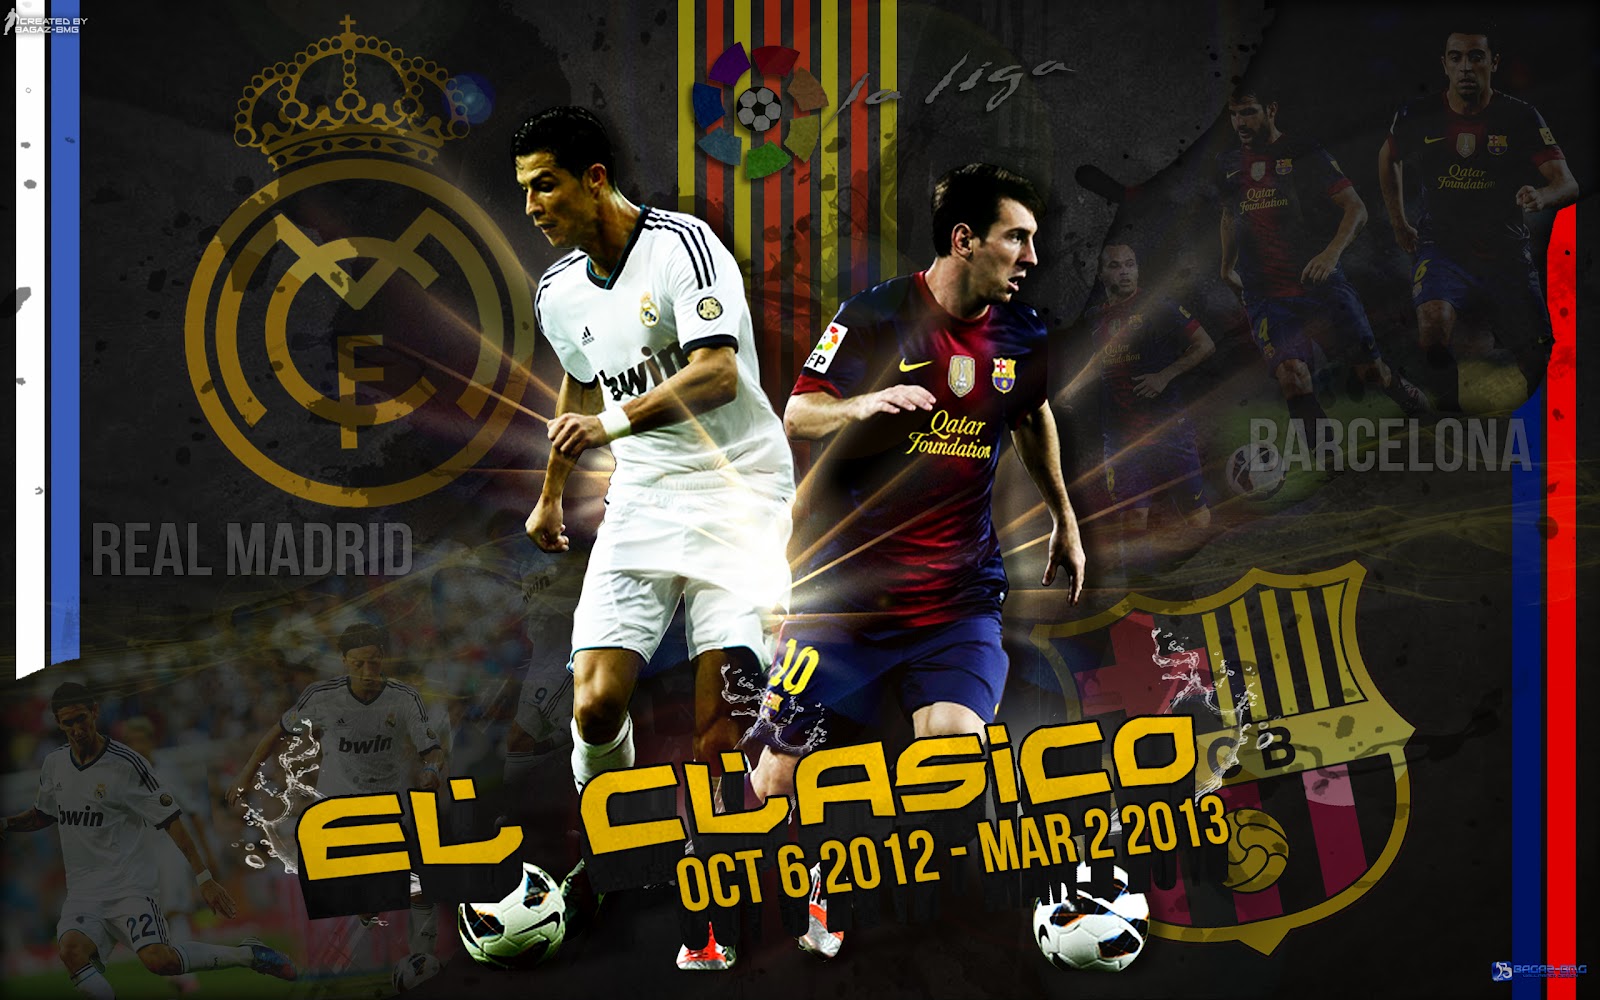 http://2.bp.blogspot.com/-U3wtWaalgJQ/US6J2nN9p4I/AAAAAAAAQ6U/8DelqDHyas8/s1600/EL+Clasico+FC+Barcelona+vs+Real+Madrid+2013+Wallpaper+HD+Lionel+Messi+and+Cristiano+Ronaldo.jpg